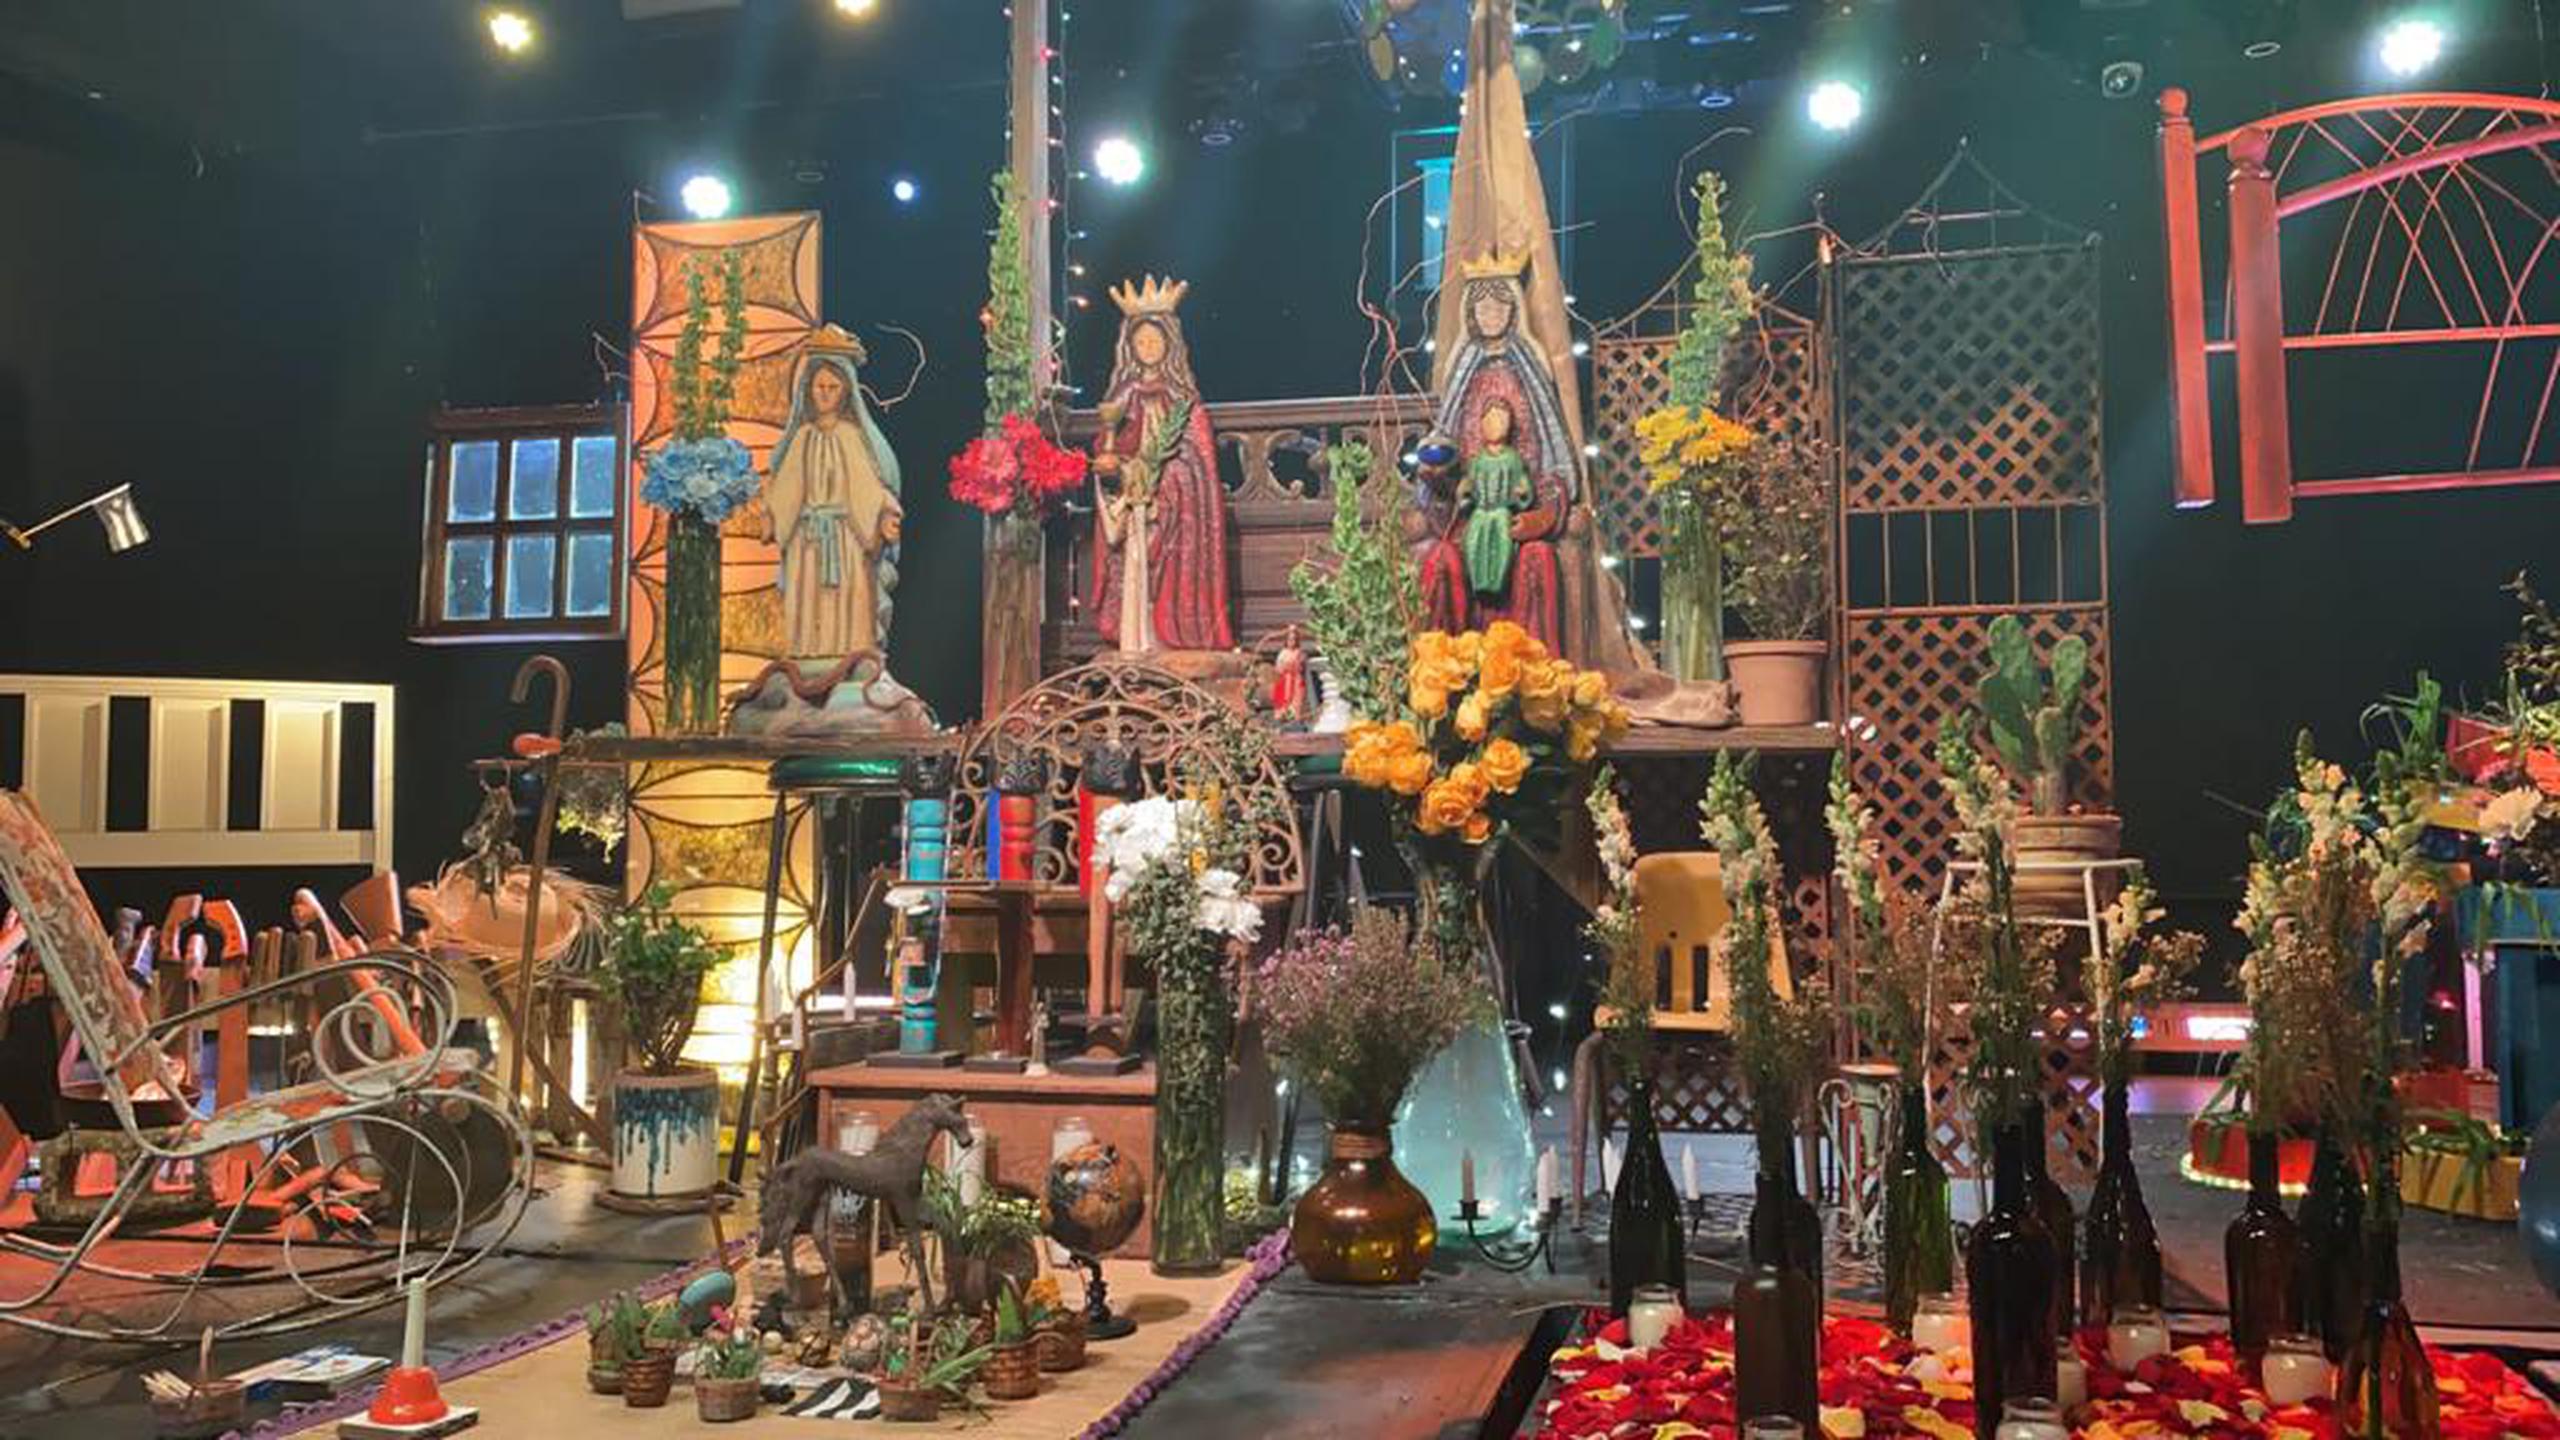 En La Promesa se podrá apreciar una instalación artística de un altar inspirado en los Santos Reyes y Santas Reinas.